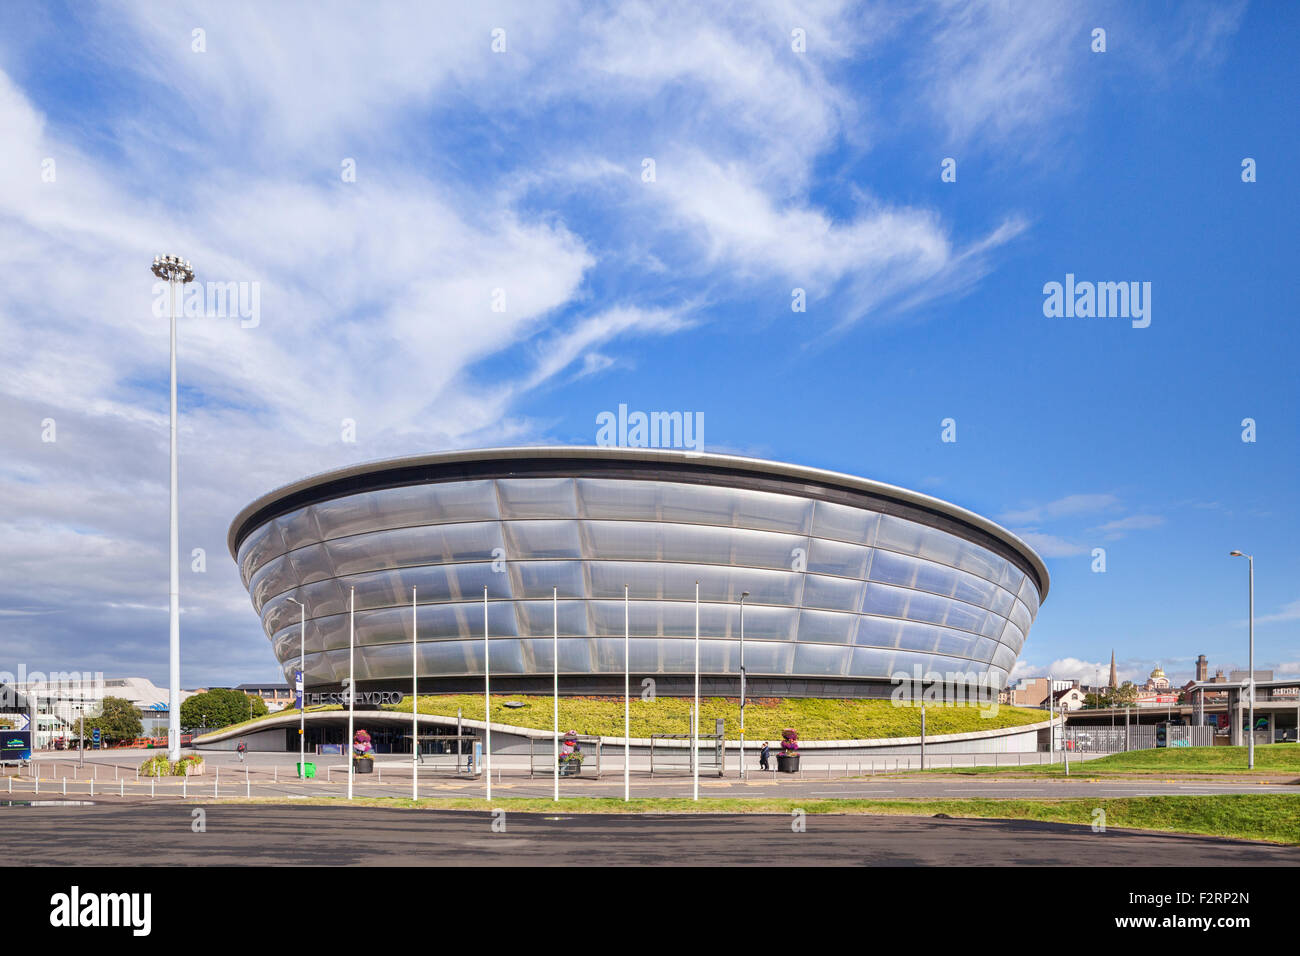 L'ETI Hydro Arena, une salle de spectacle de 13 000 places, situé à côté de la Scottish Exhibition and Conference Centre de Glasgow. Banque D'Images